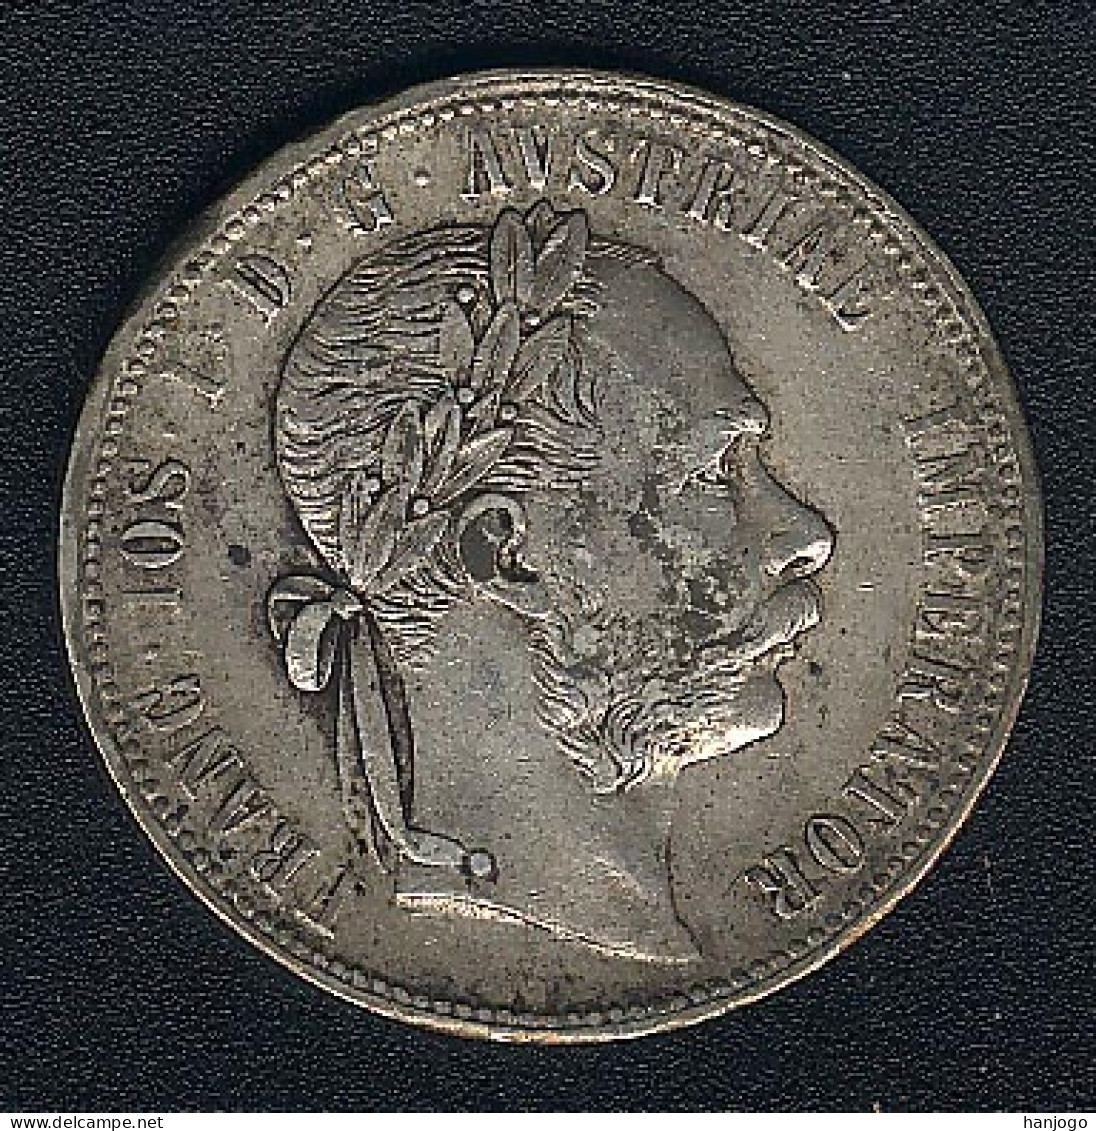 Österreich, 1 Florin 1879, Silber - Austria